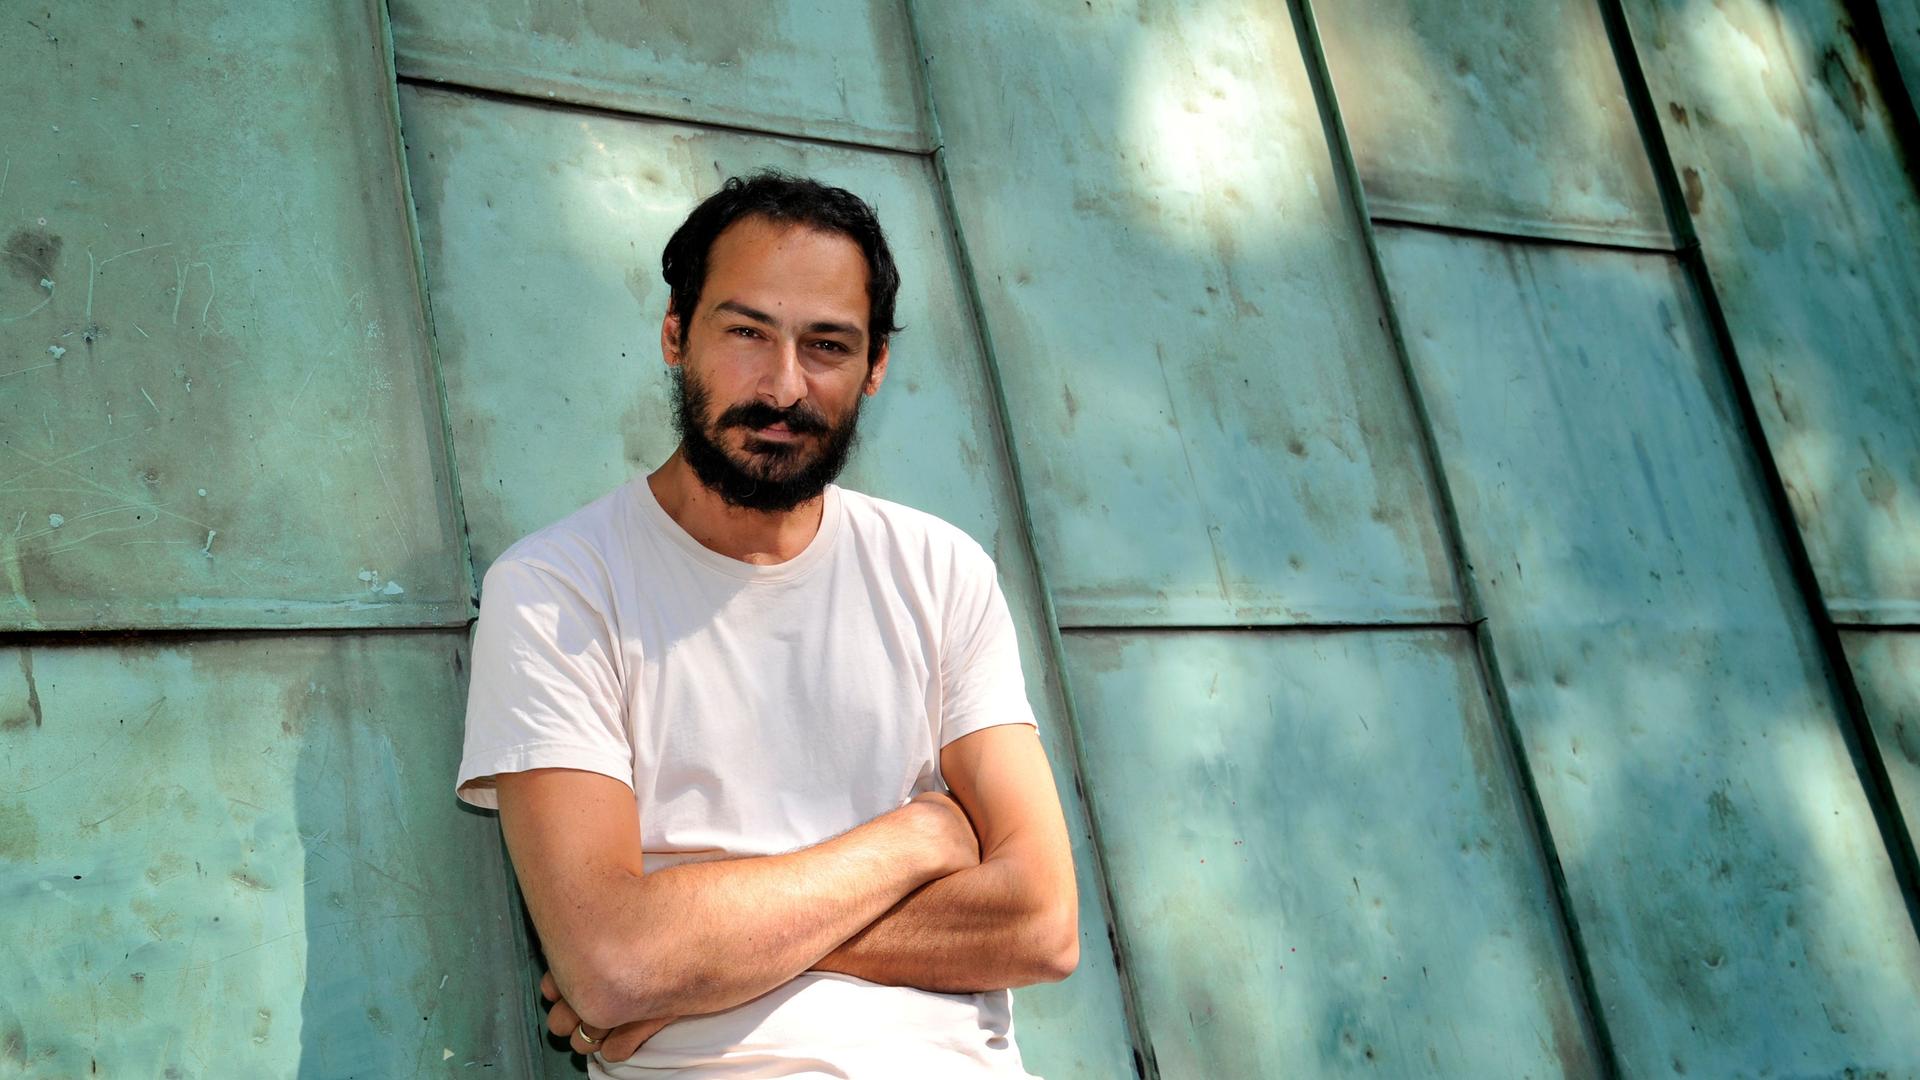 Mazen Kerbaj steht im Jahr 2015 vor einer türkisgrünen Blechkonstruktion. Der Künstler hat schwarze Haare und einen Bart, er trägt ein weißes T-Shirt.